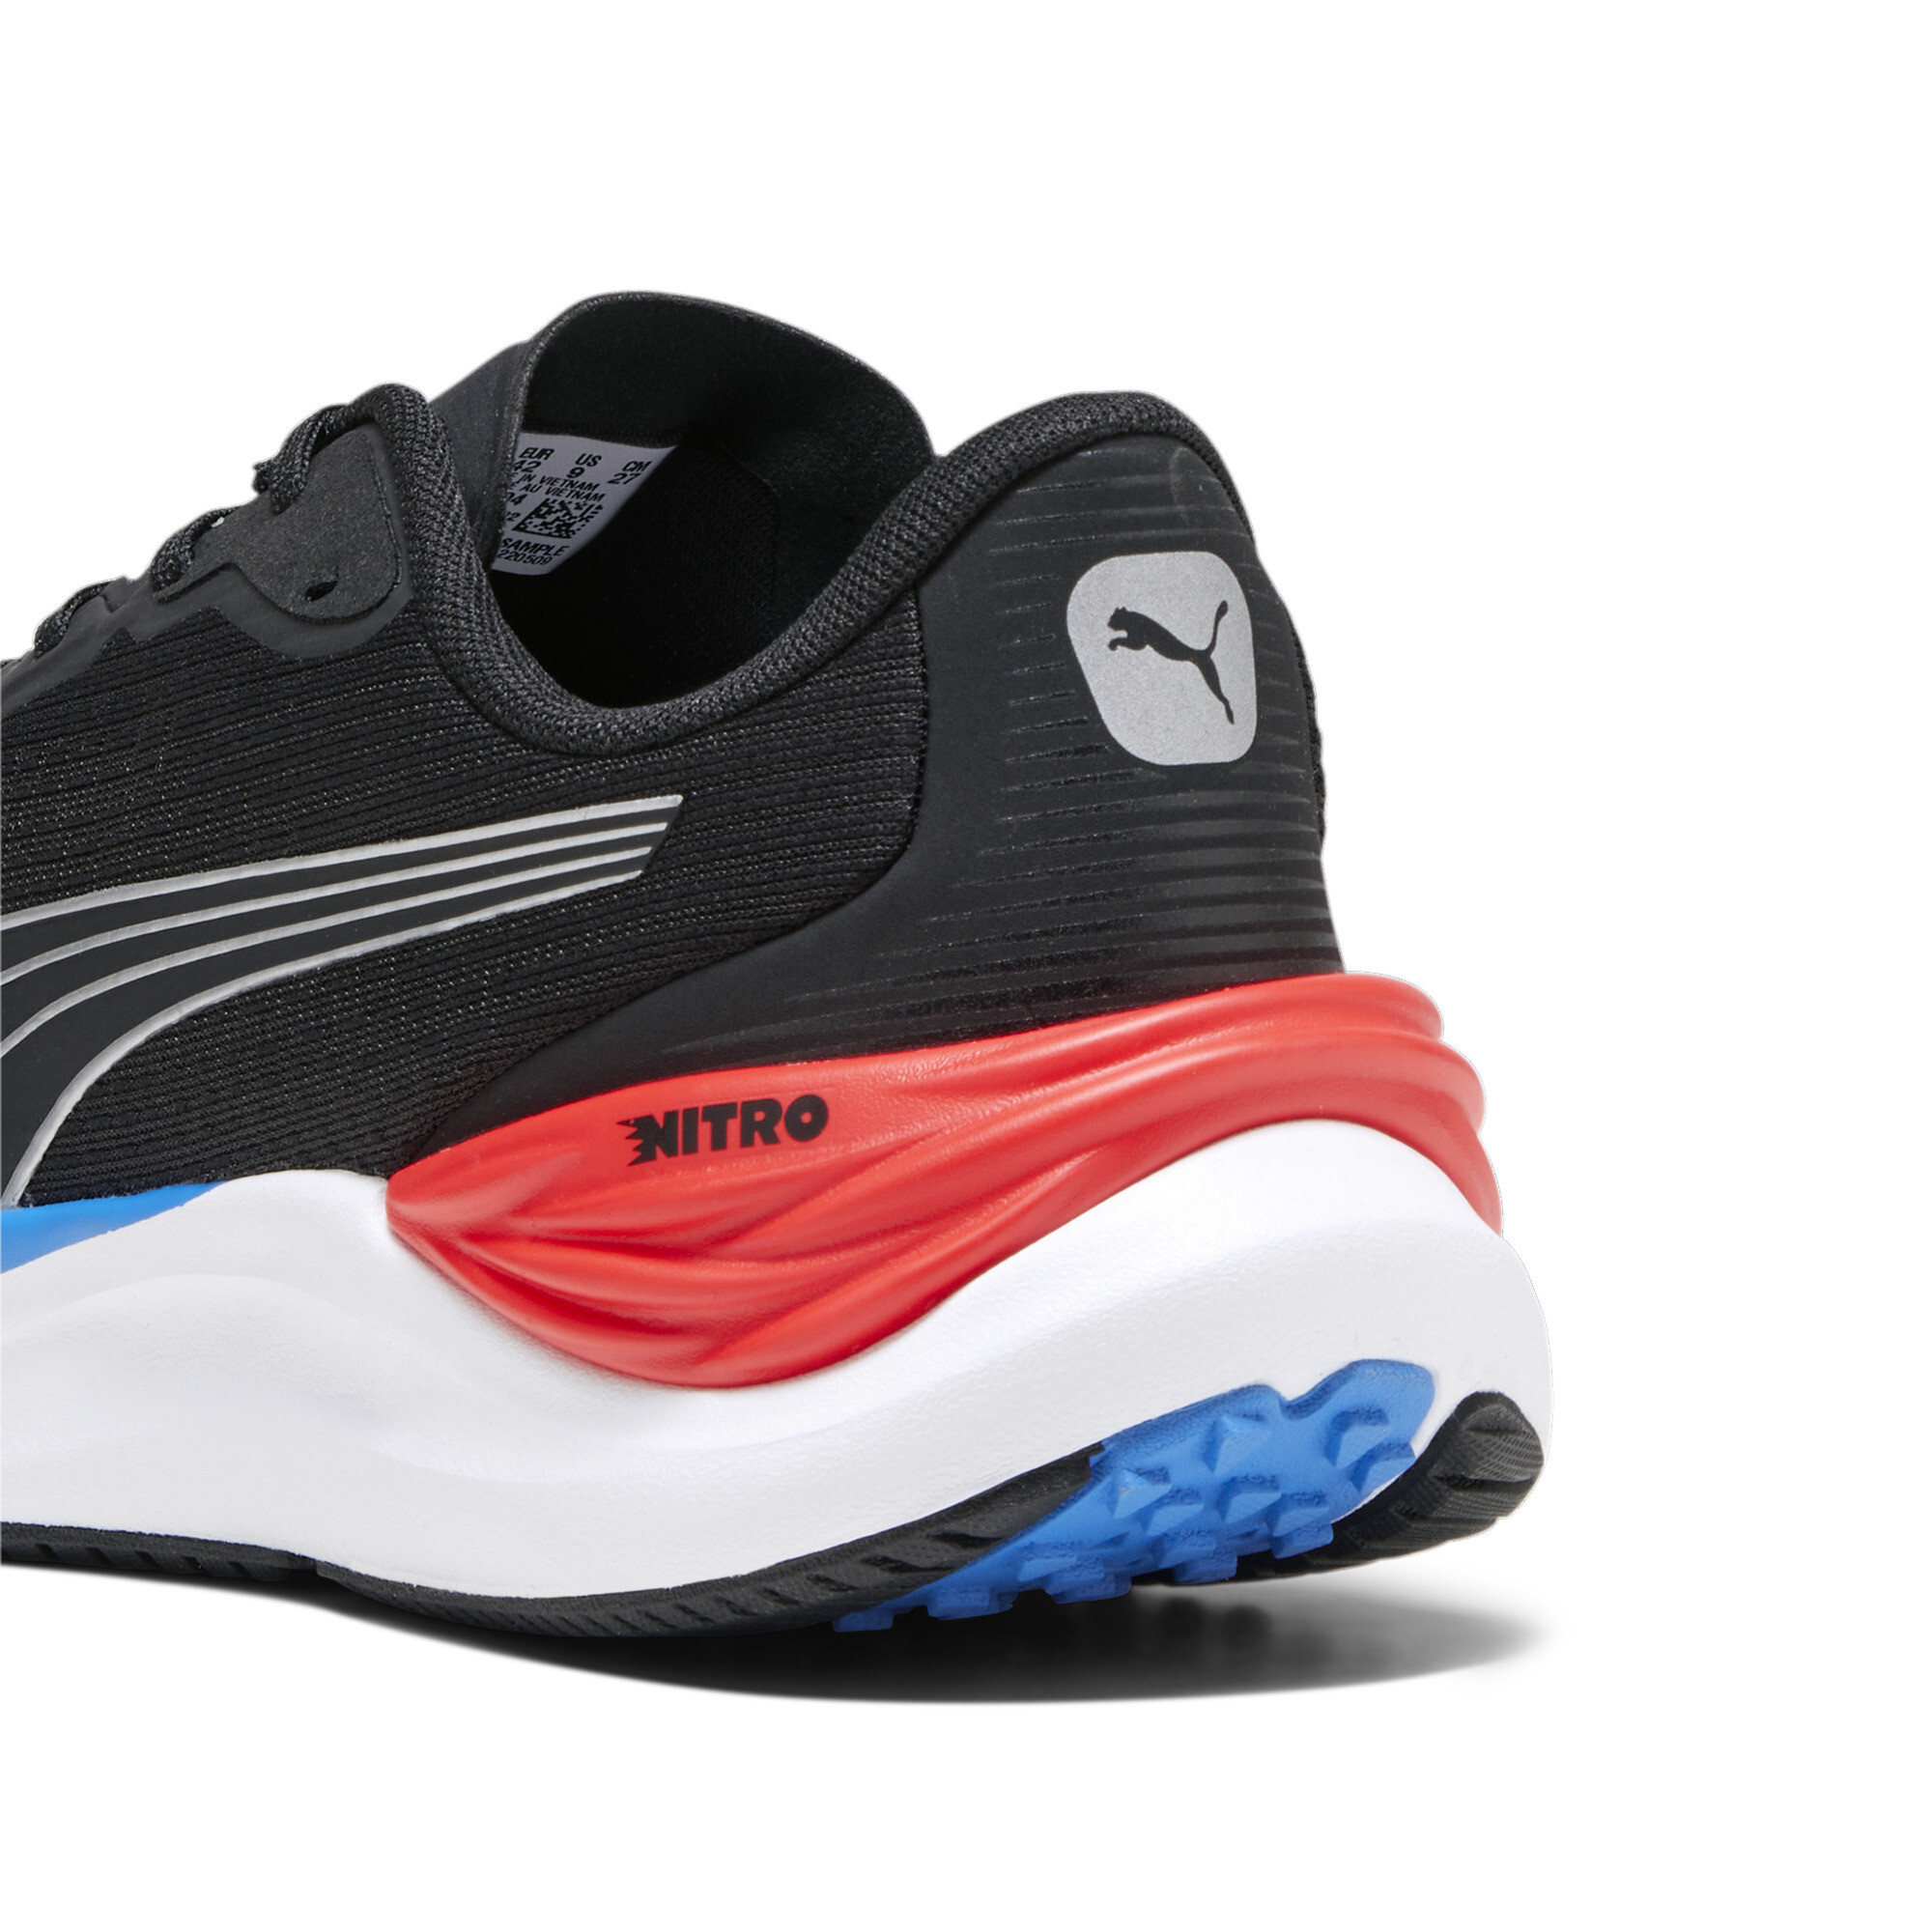 Men's PUMA Electrify NITROâ¢ 3 Running Shoes In Black, Size EU 41